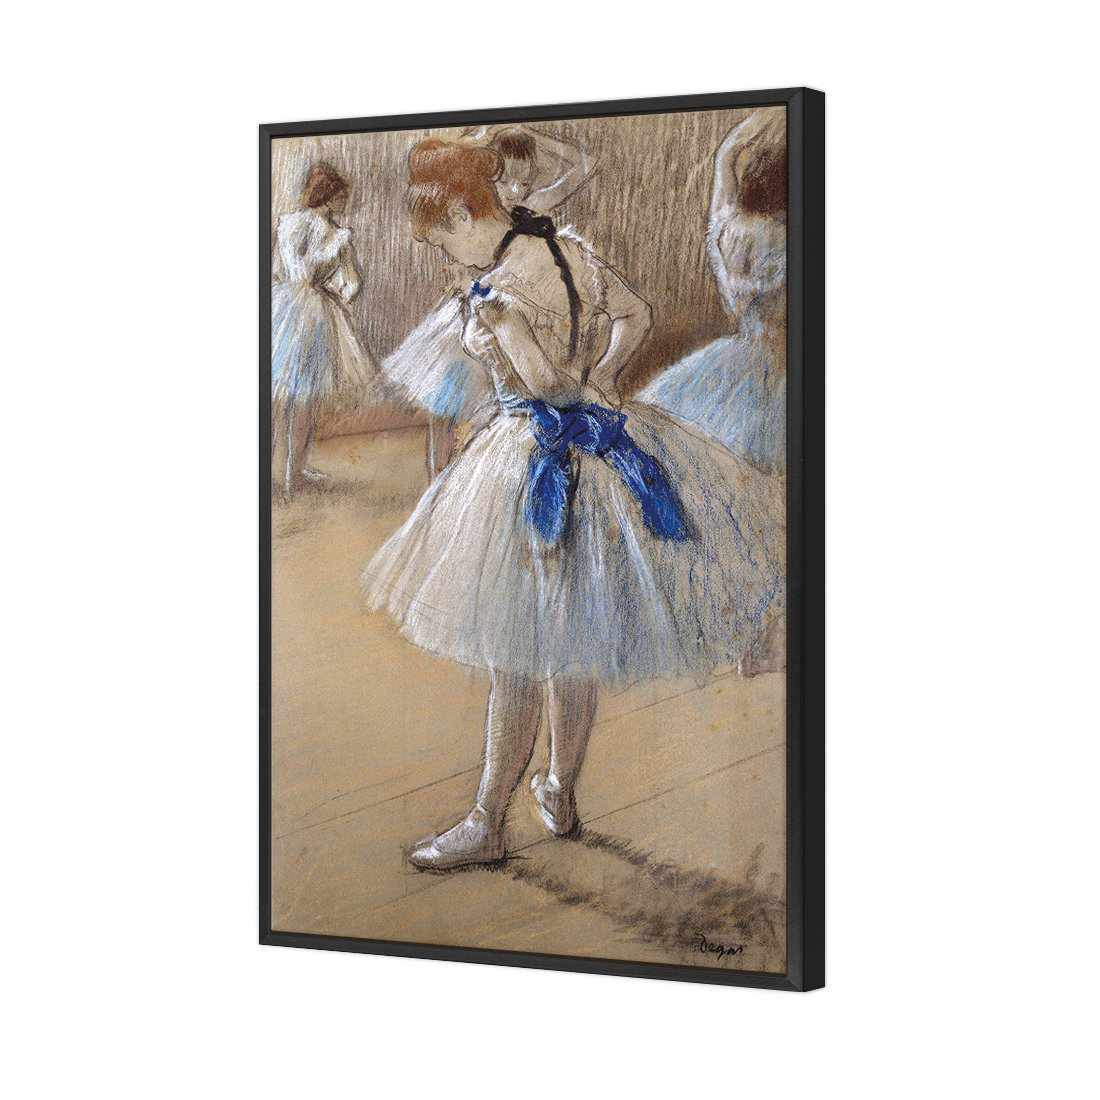 Dancer by Edgar Degas Canvas Art-Canvas-Wall Art Designs-45x30cm-Canvas - Black Frame-Wall Art Designs